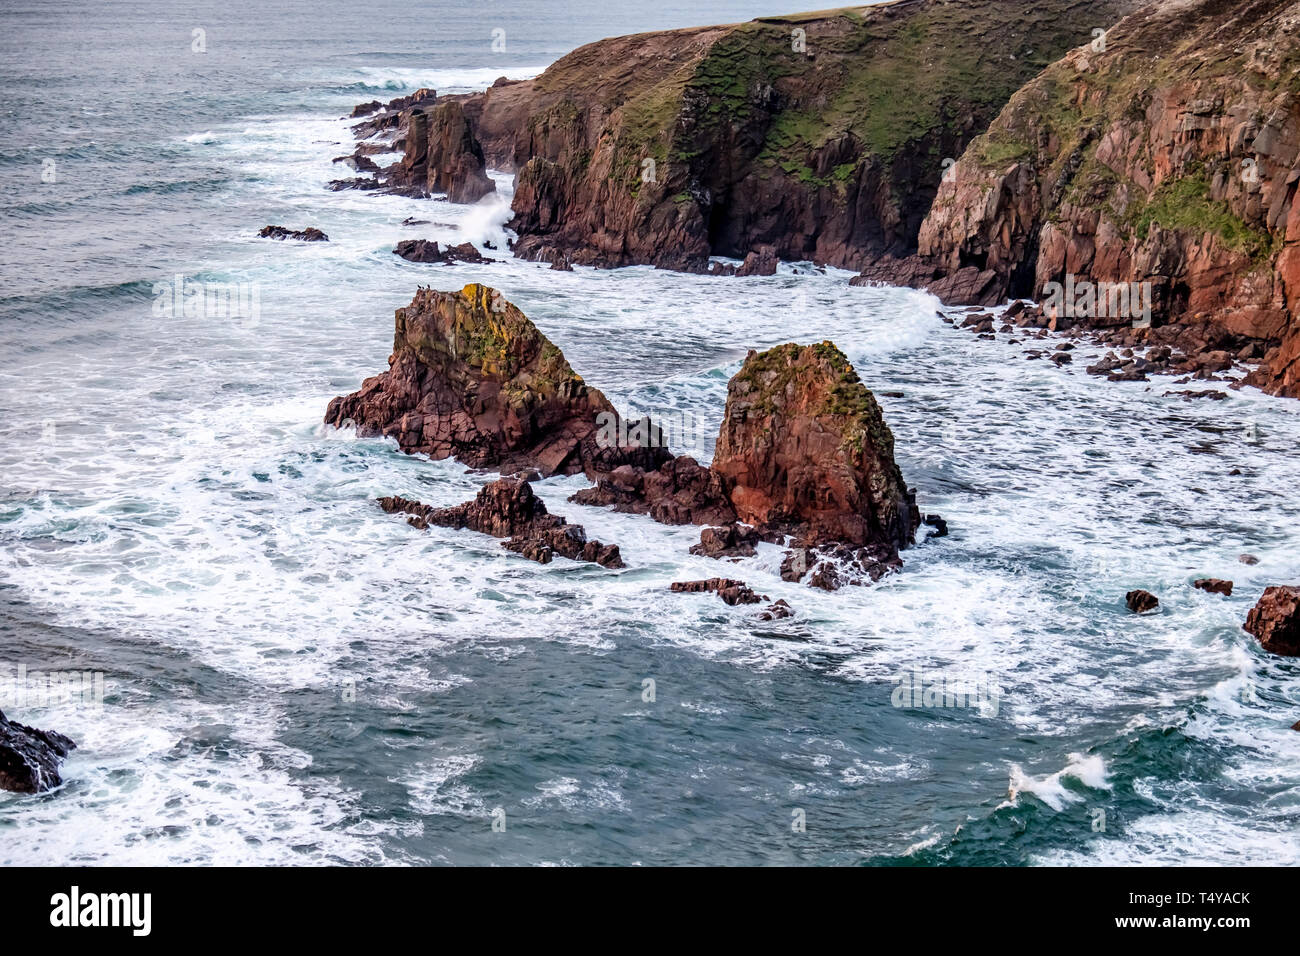 Bloody Foreland, littoral de la région de Donegal Gaeltacht. Façon sauvage de l'Atlantique - l'Irlande. Banque D'Images